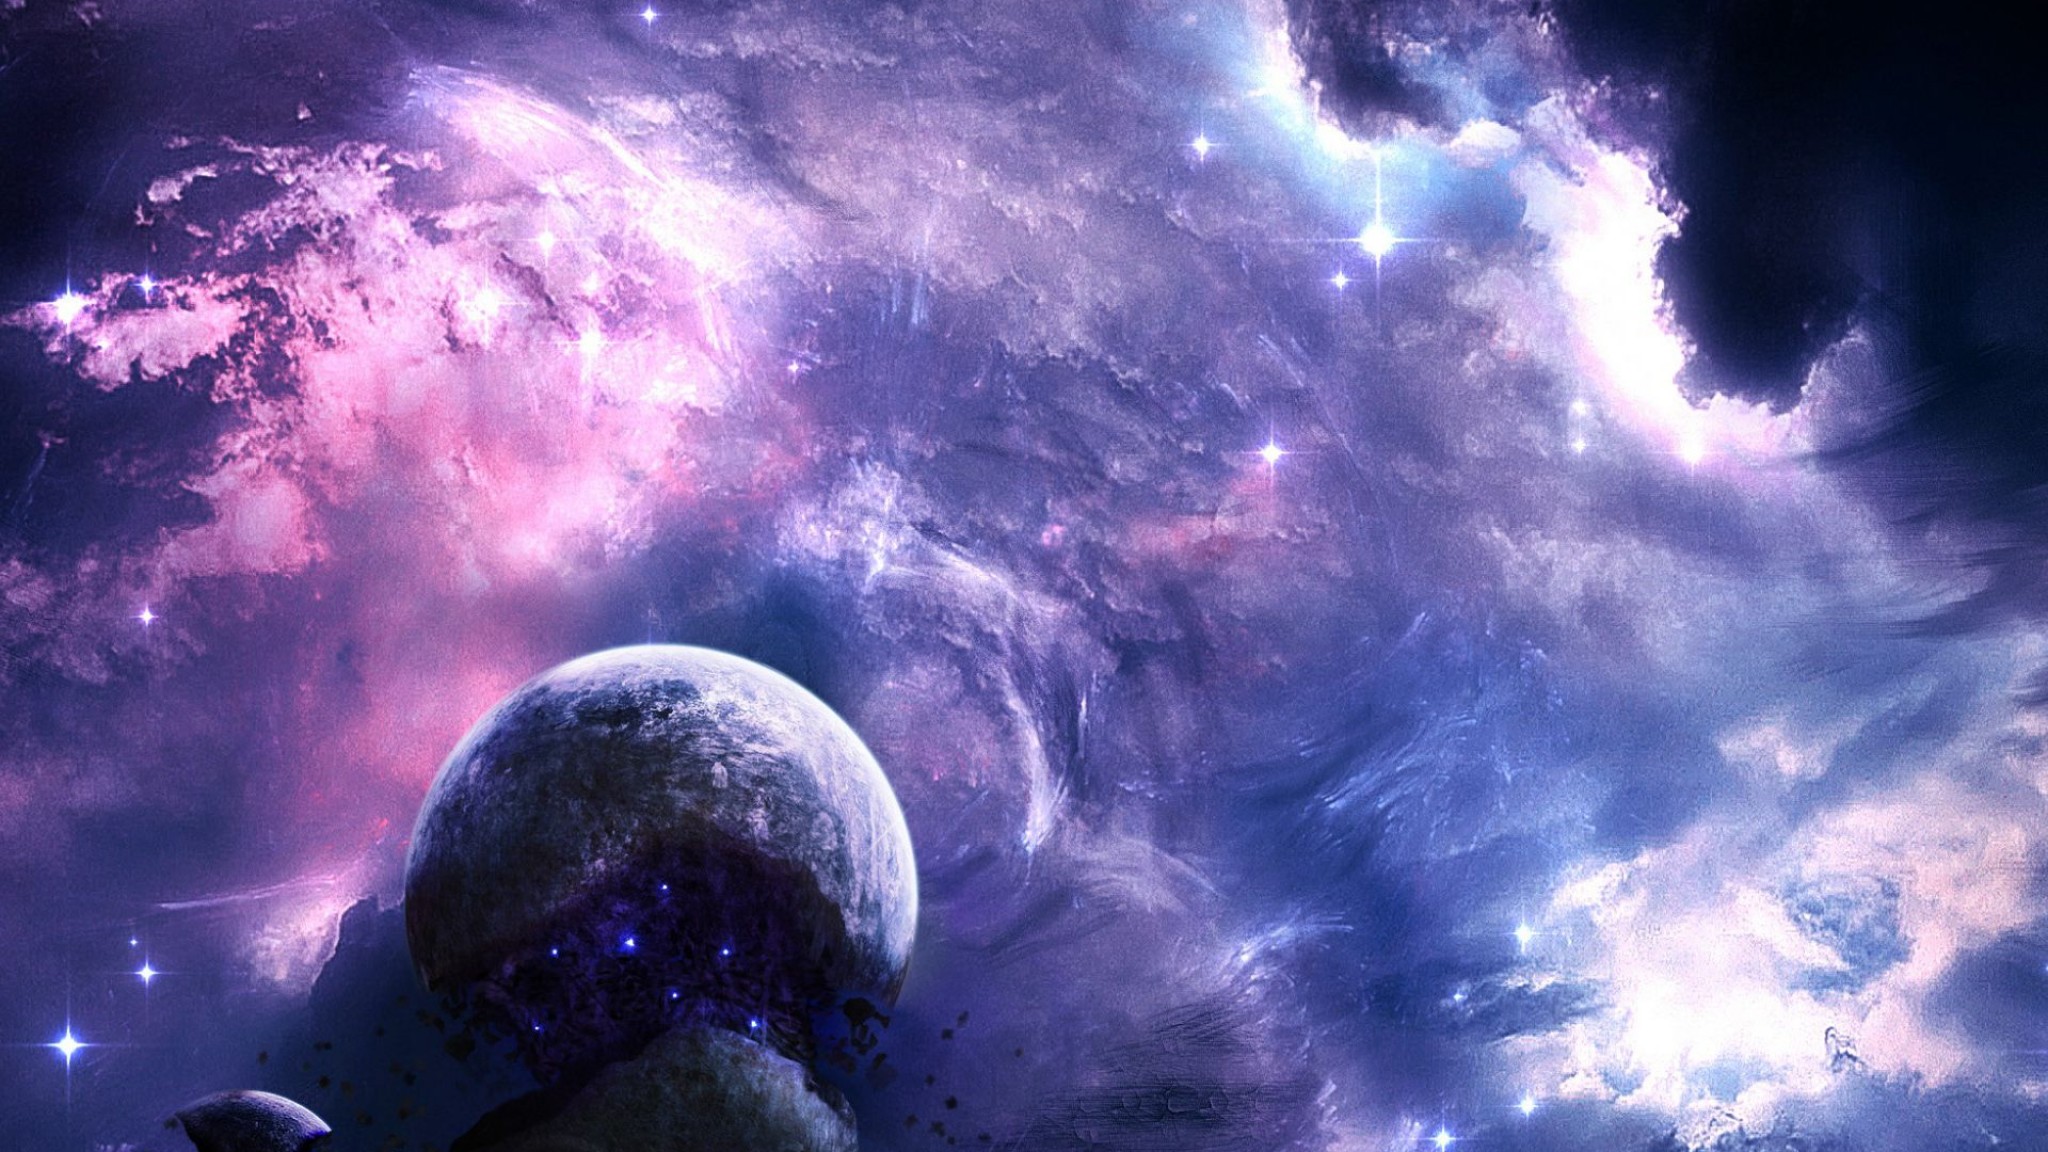 fond d'écran pour la chaîne youtube,cosmos,ciel,atmosphère,objet astronomique,univers